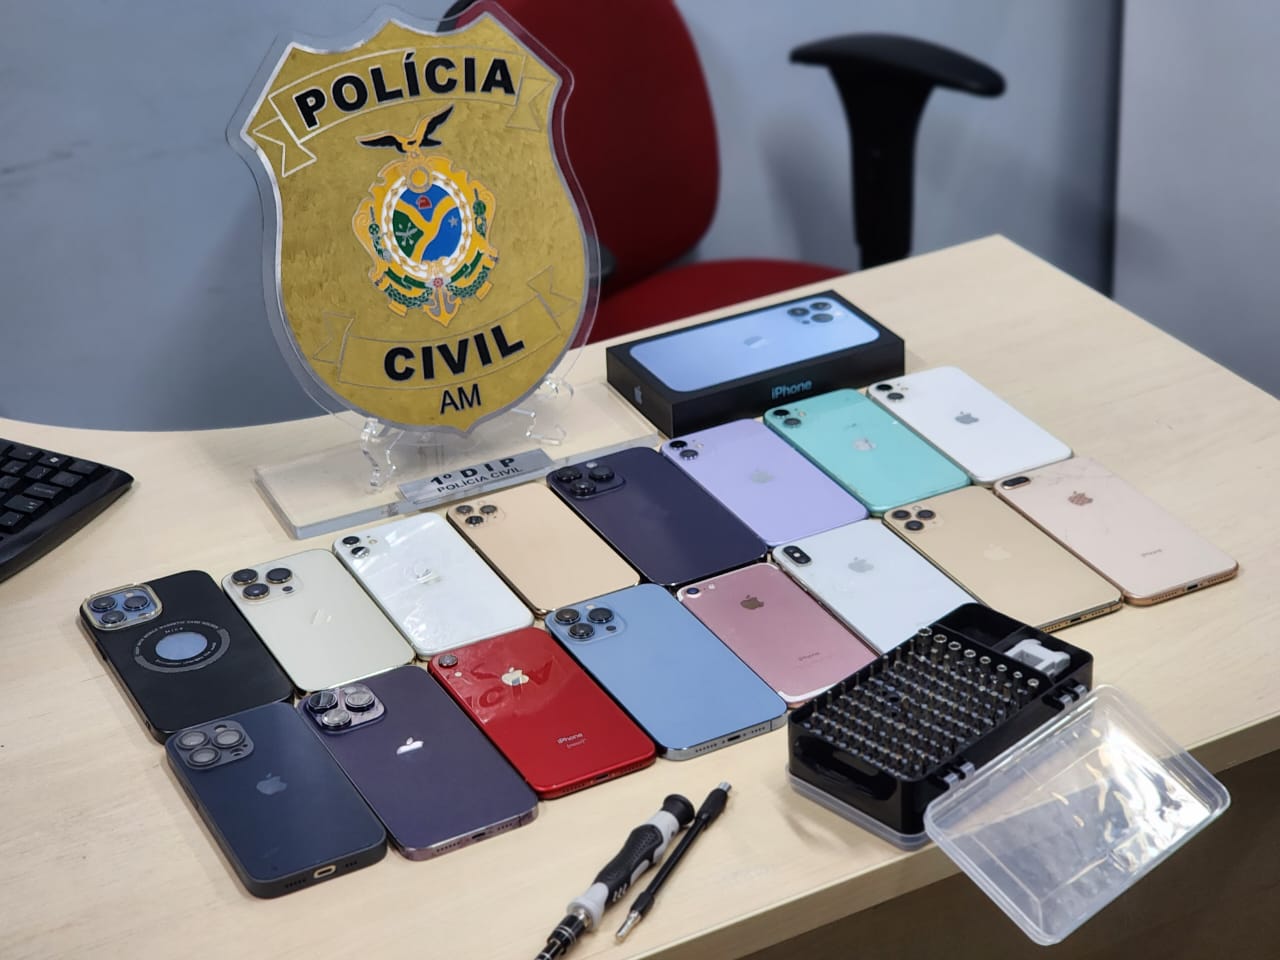 Homem é preso em posse de celulares oriundos de roubos e furtos, avaliados em mais de 90 mil reais